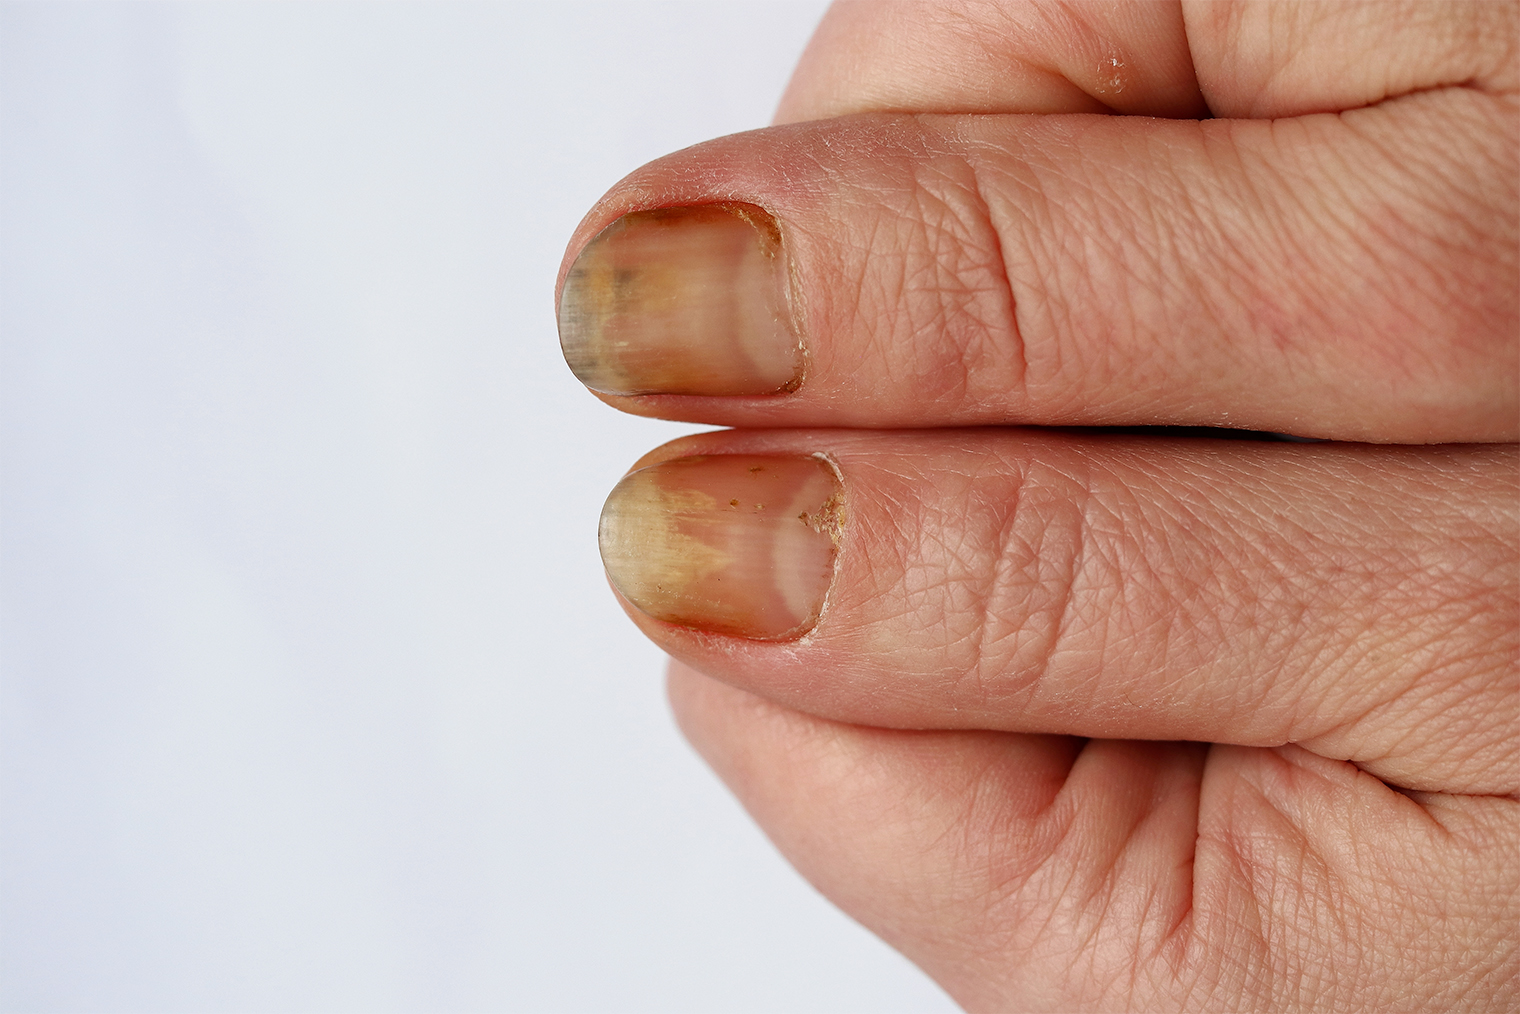 Ногти человека с псориазом. Фото: Millana / Shutterstock